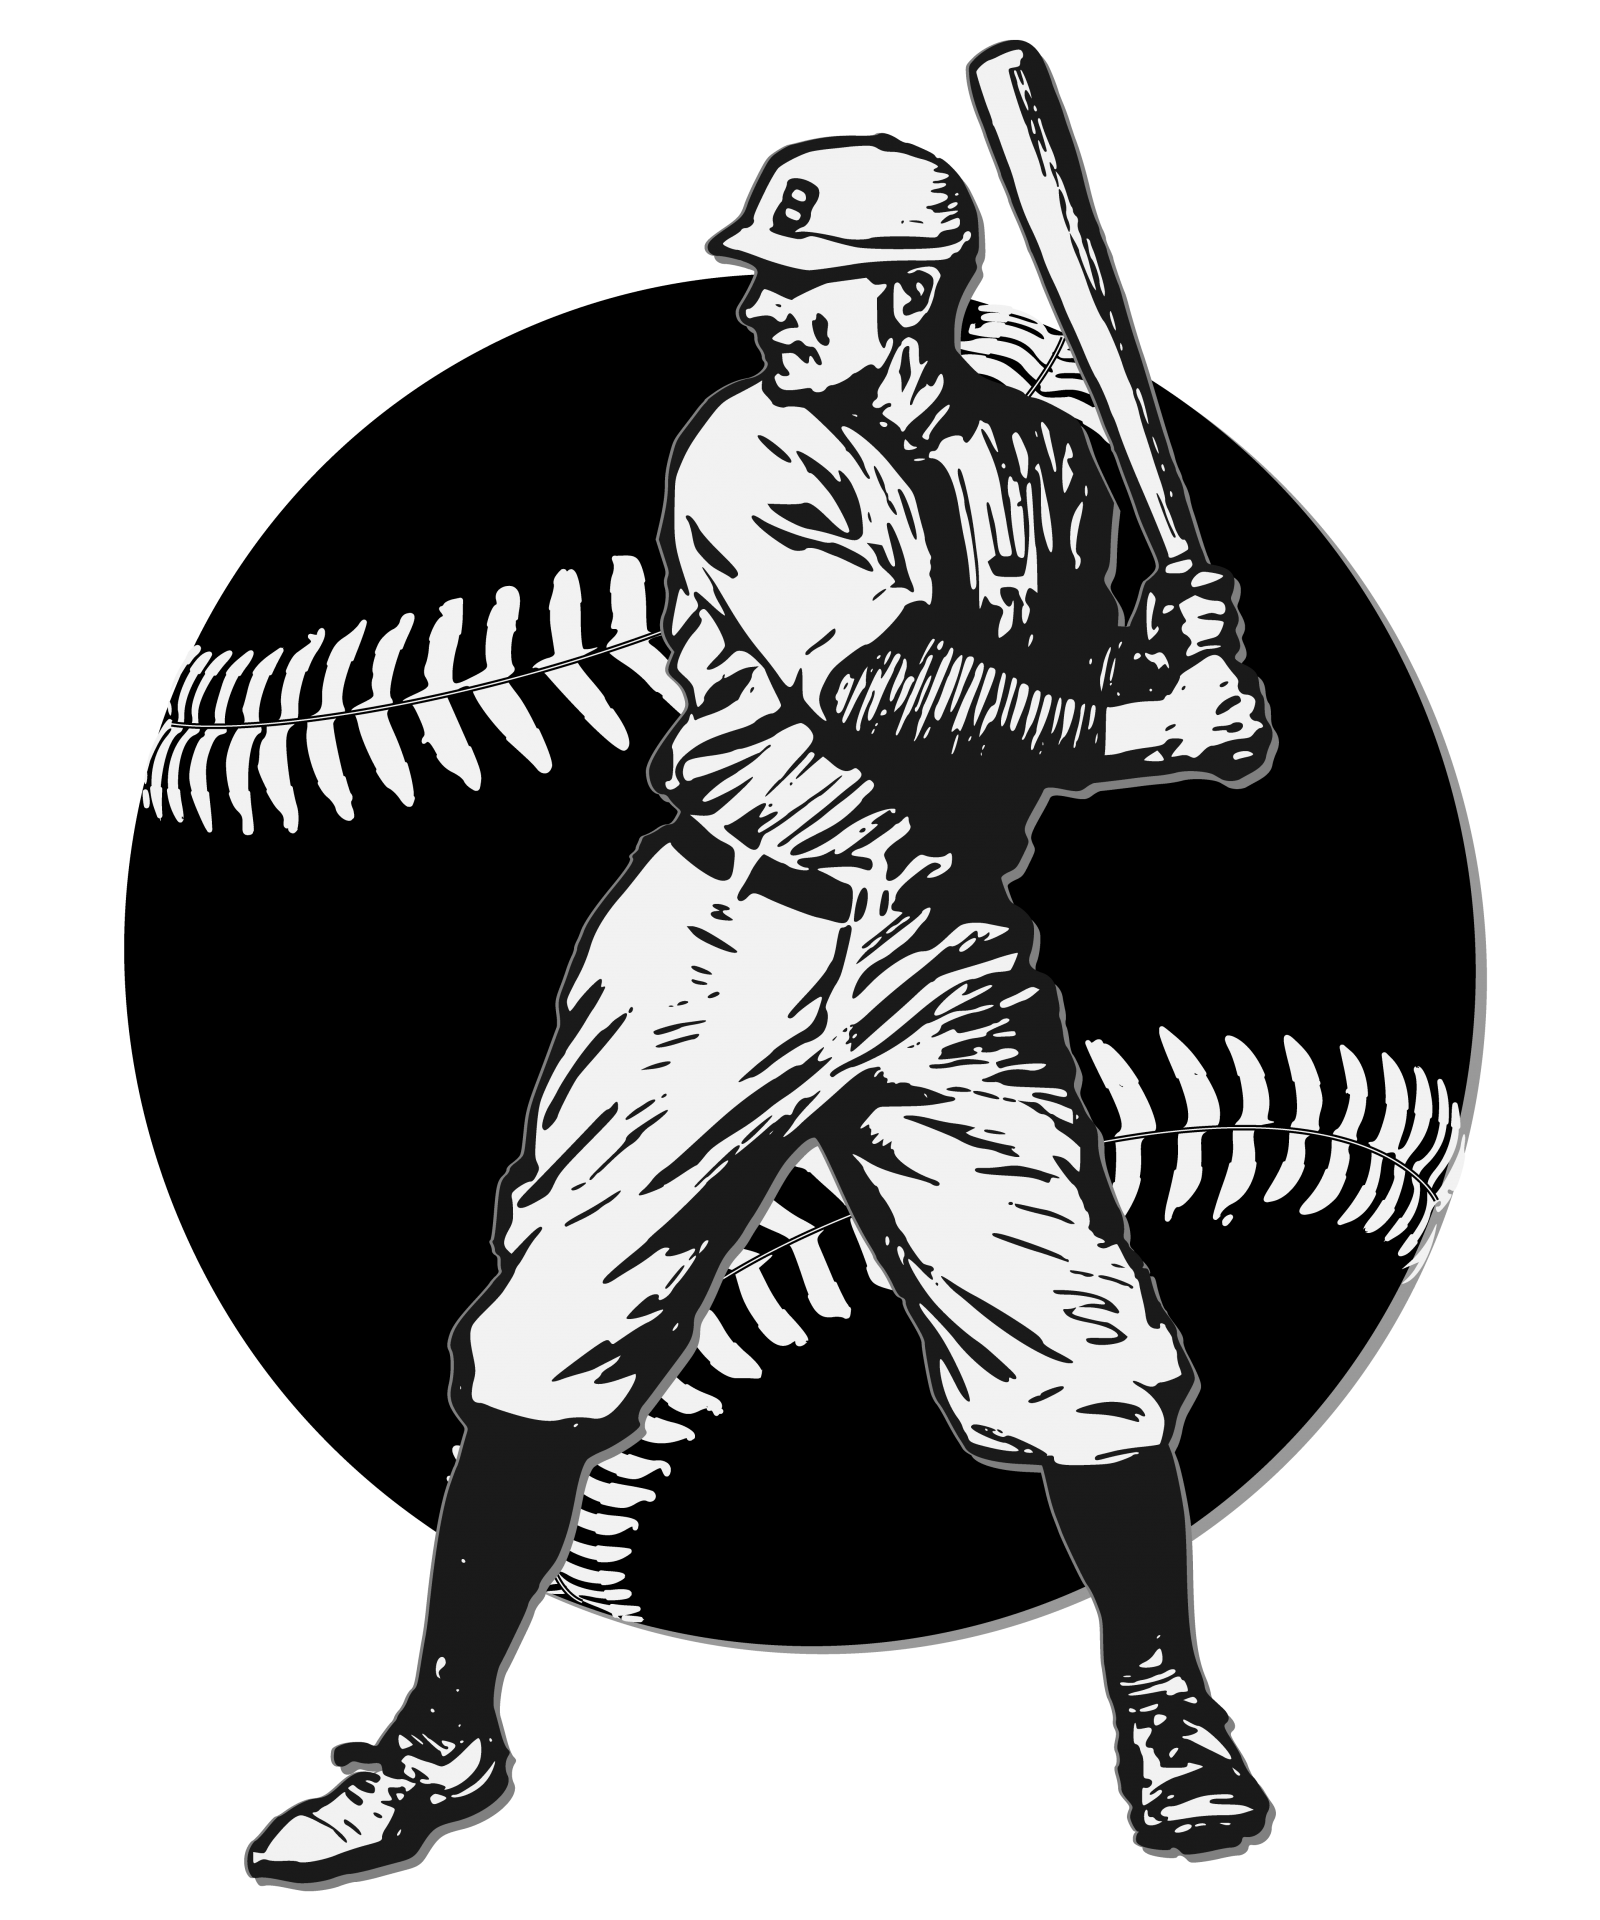 Logo de bateador de béisbol vintage